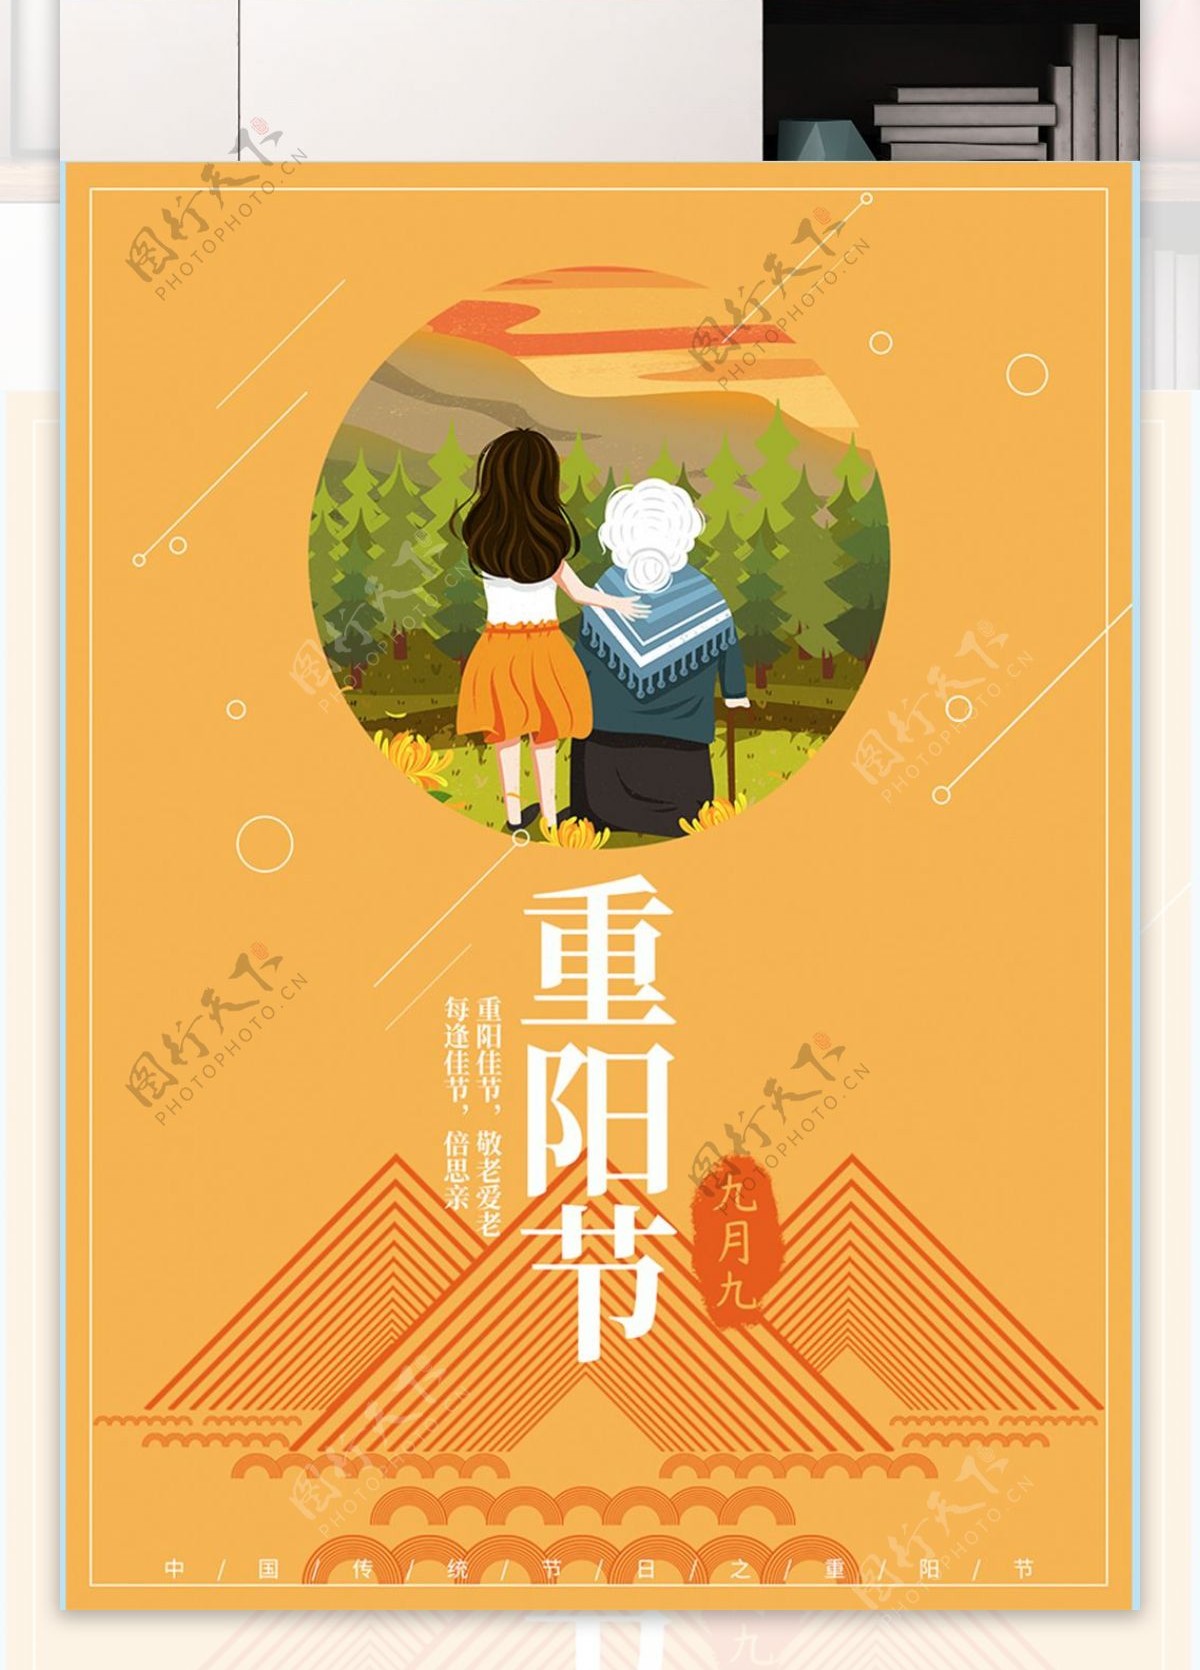 中国传统节日重阳节之插画应用海报设计